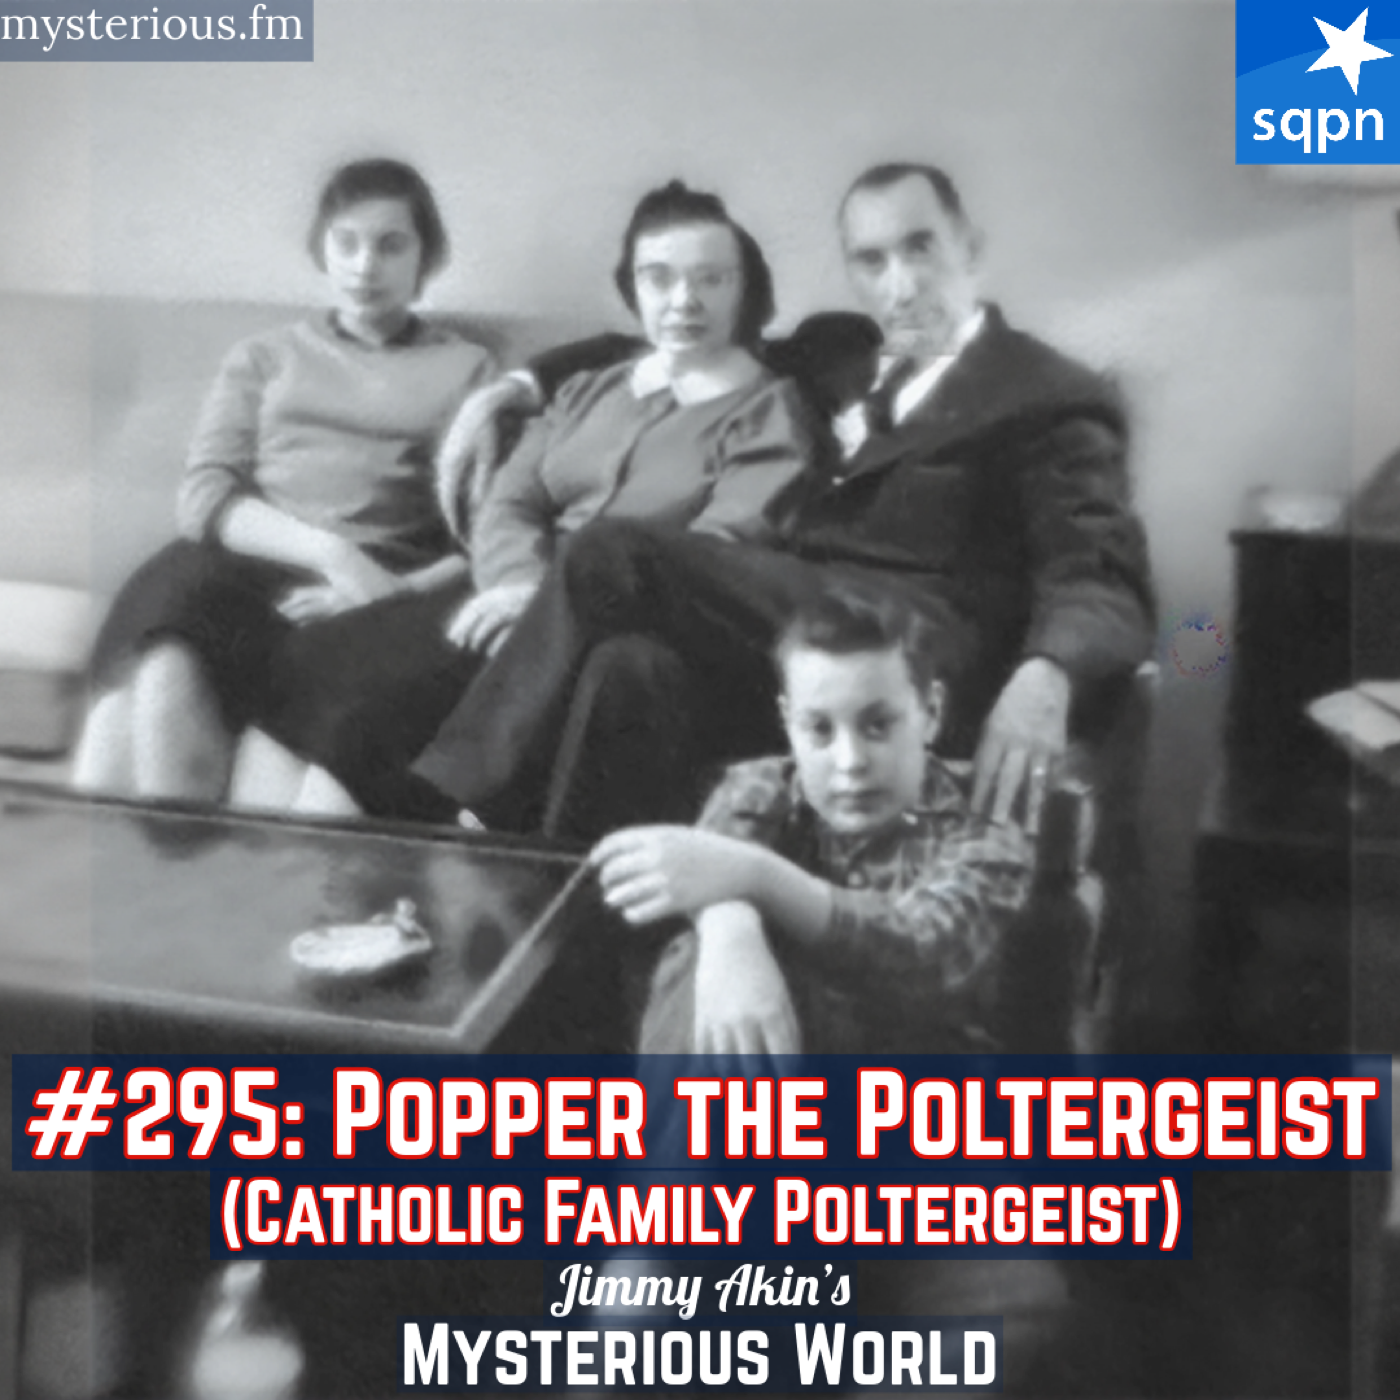 Popper the Poltergeist (Seaford, Catholic Family Poltergeist, RSPK, Jimmy Herrmann)